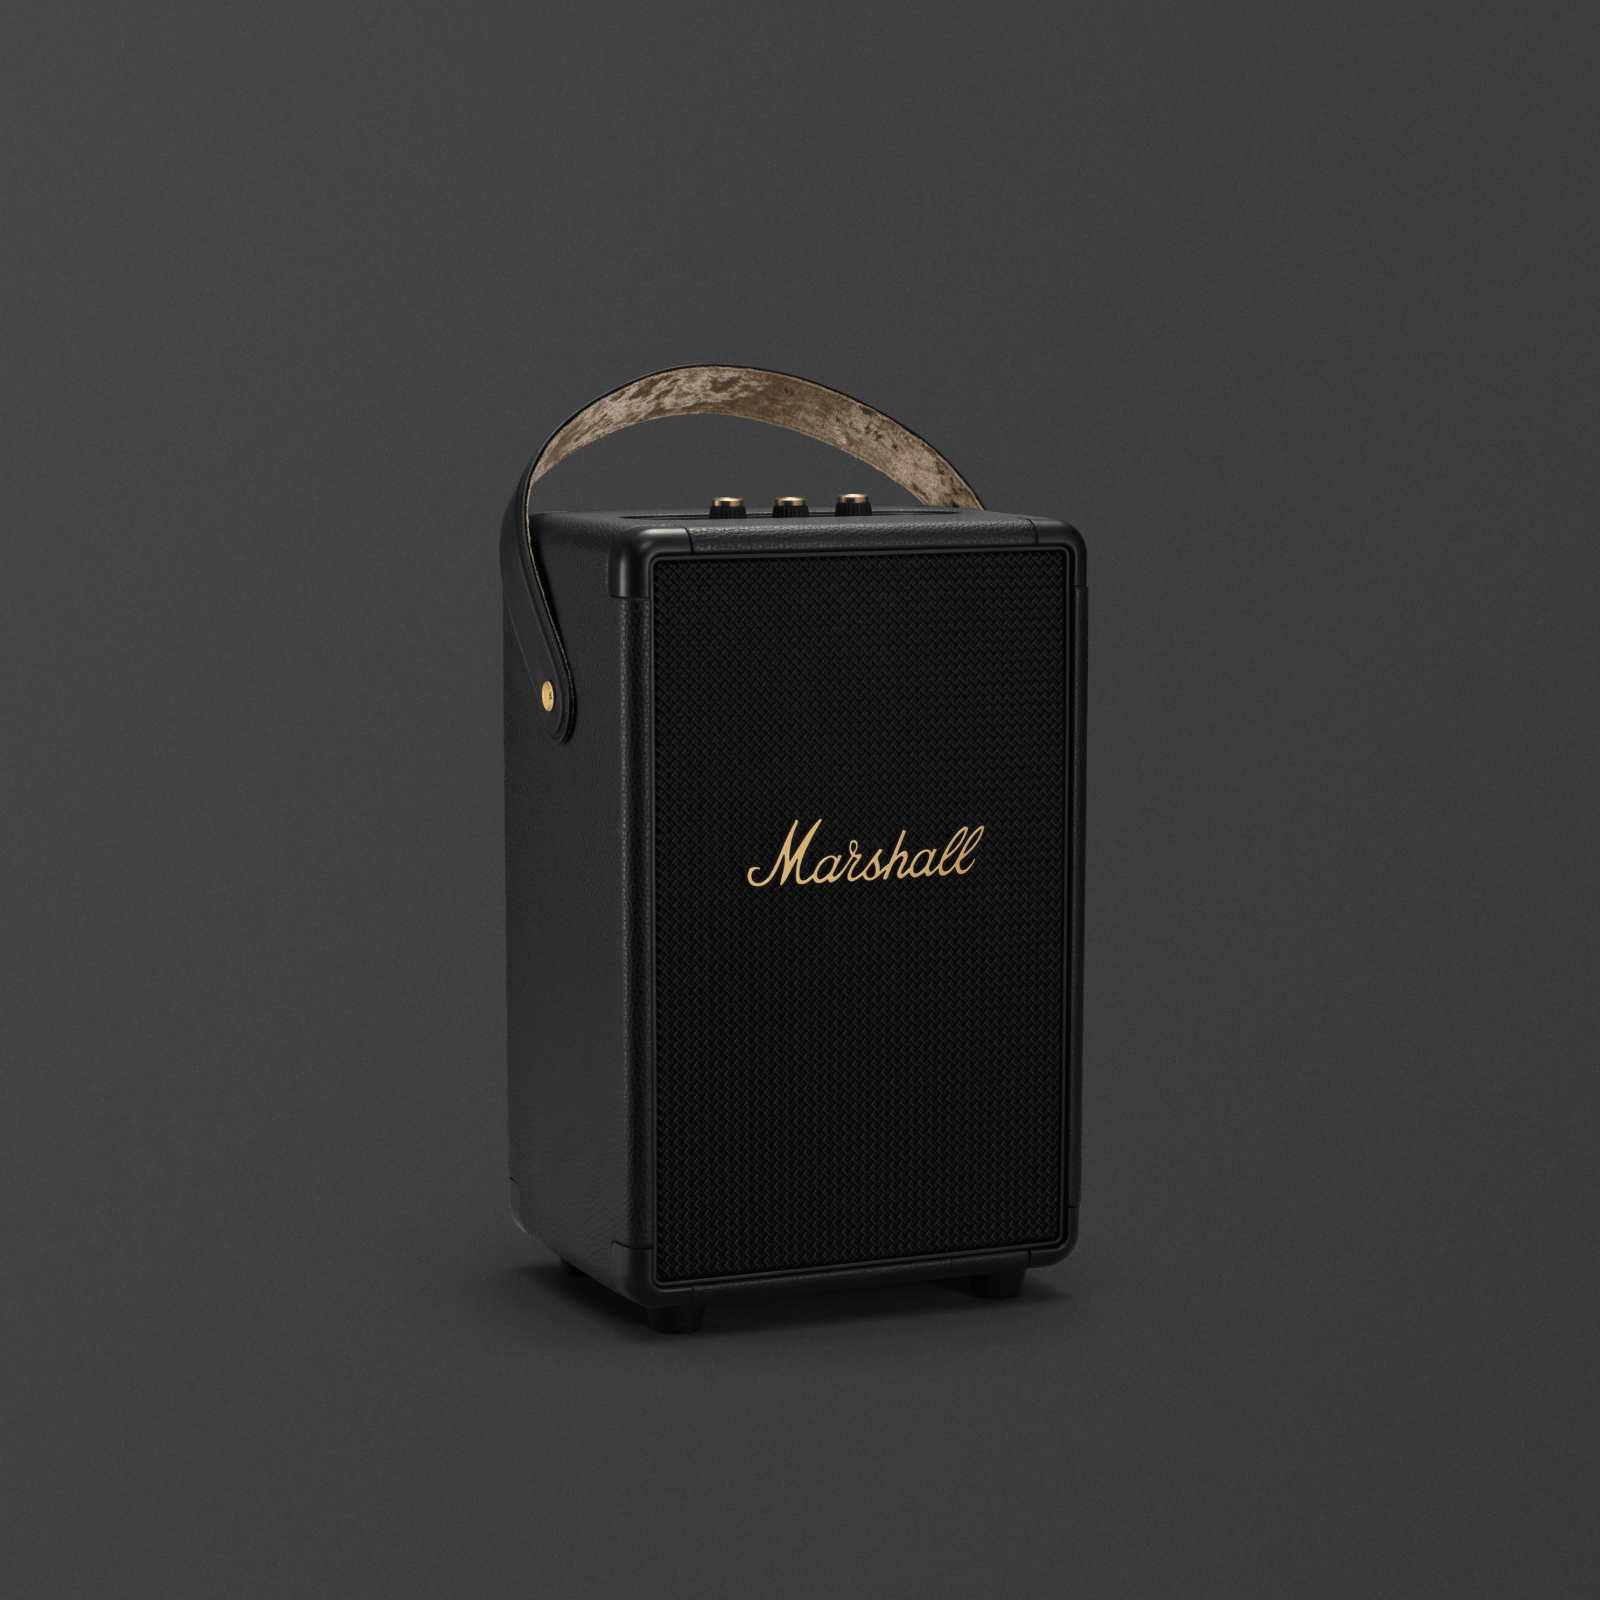 마샬 터프톤 블랙 앤 브라스 휴대용 블루투스 스피커는 강력한 오디오를 제공하는 세련되고 스타일리시한 블랙 스피커입니다.